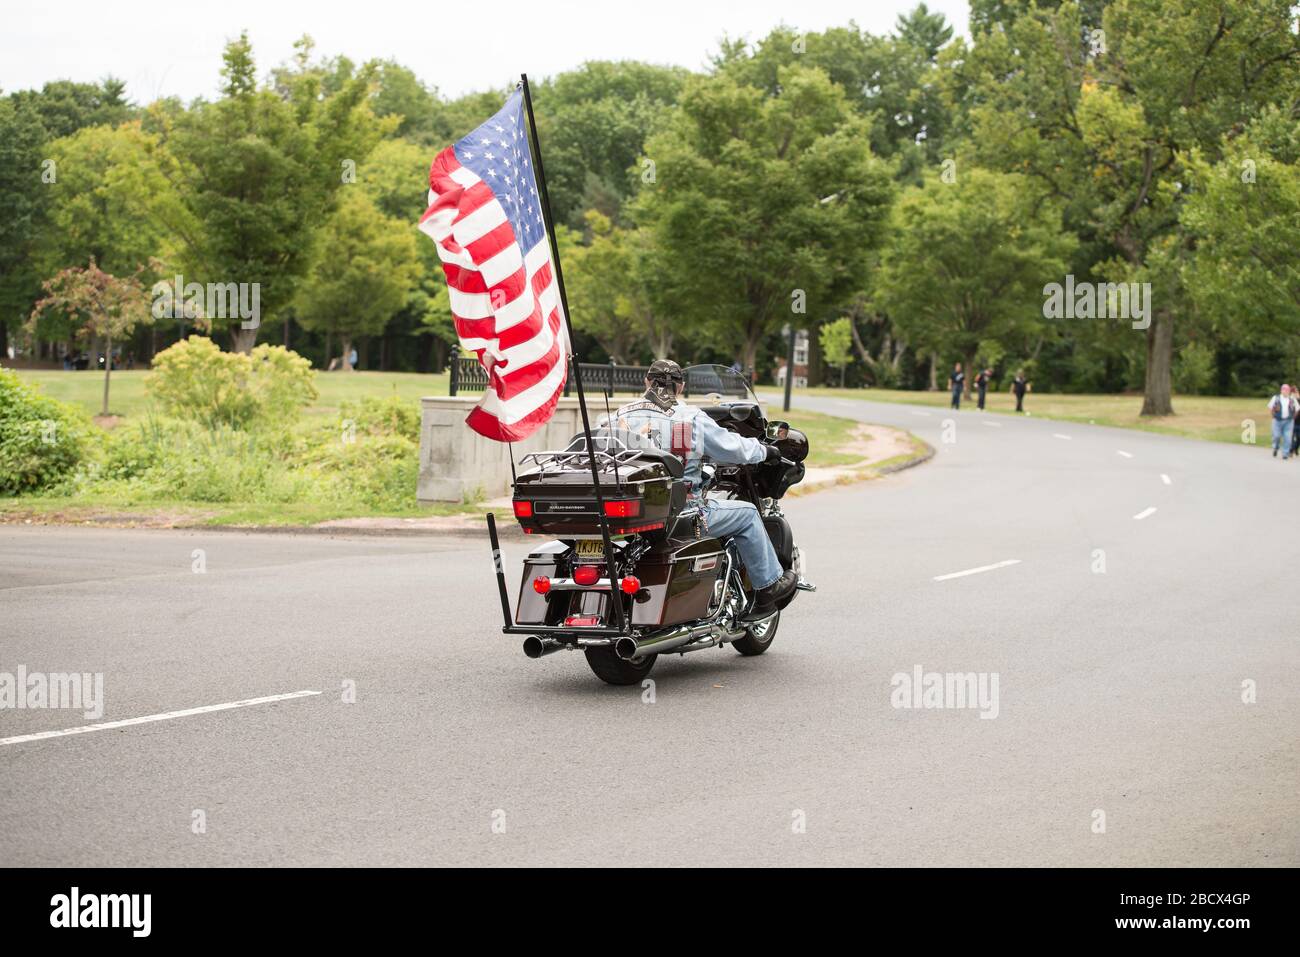 Rolling Thunder Motorradfahrer, der mit einer großen amerikanischen Flagge auf der Rückseite seines Fahrrads bei einer Rallye in einem Park in New Jersey wegfährt. Stockfoto